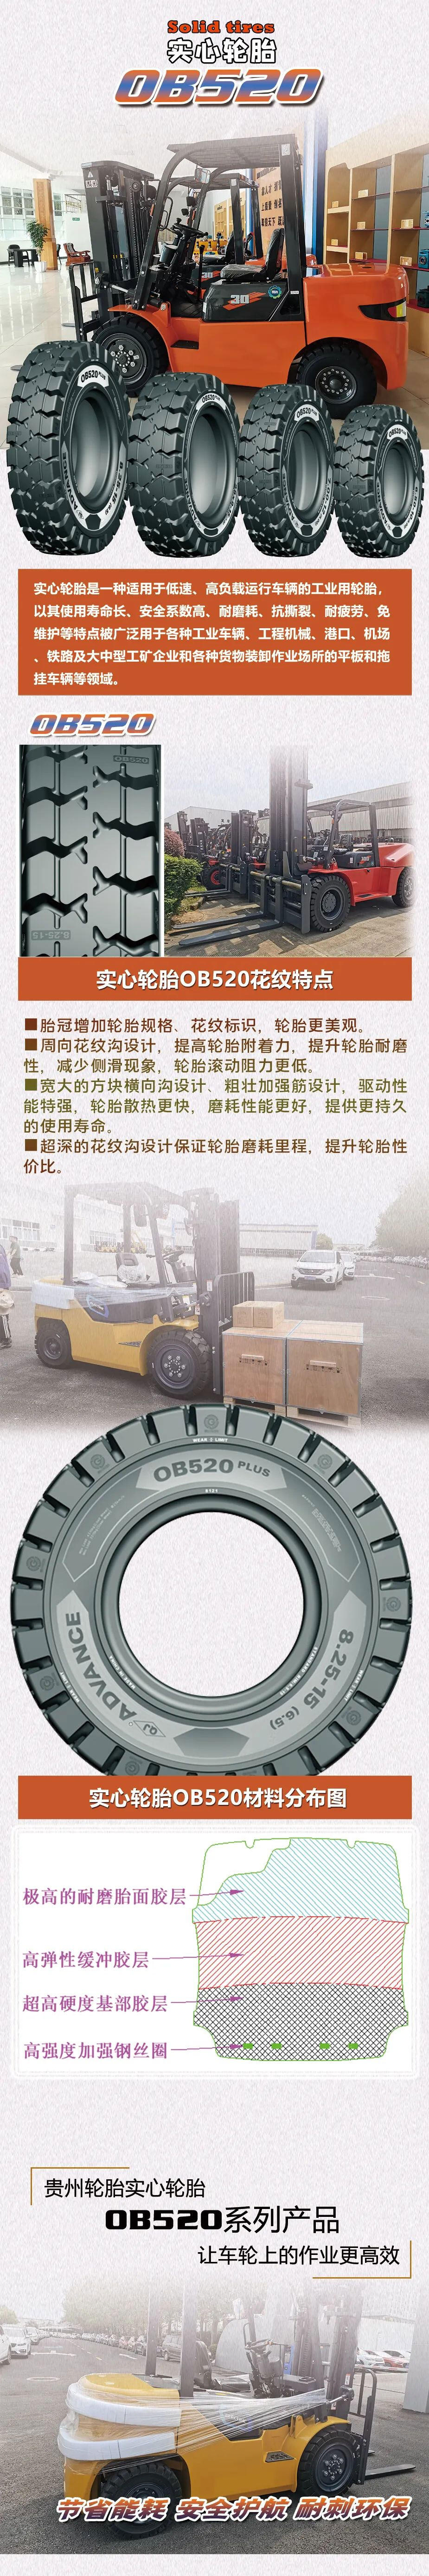 贵州轮胎实心轮胎OB520系列产品